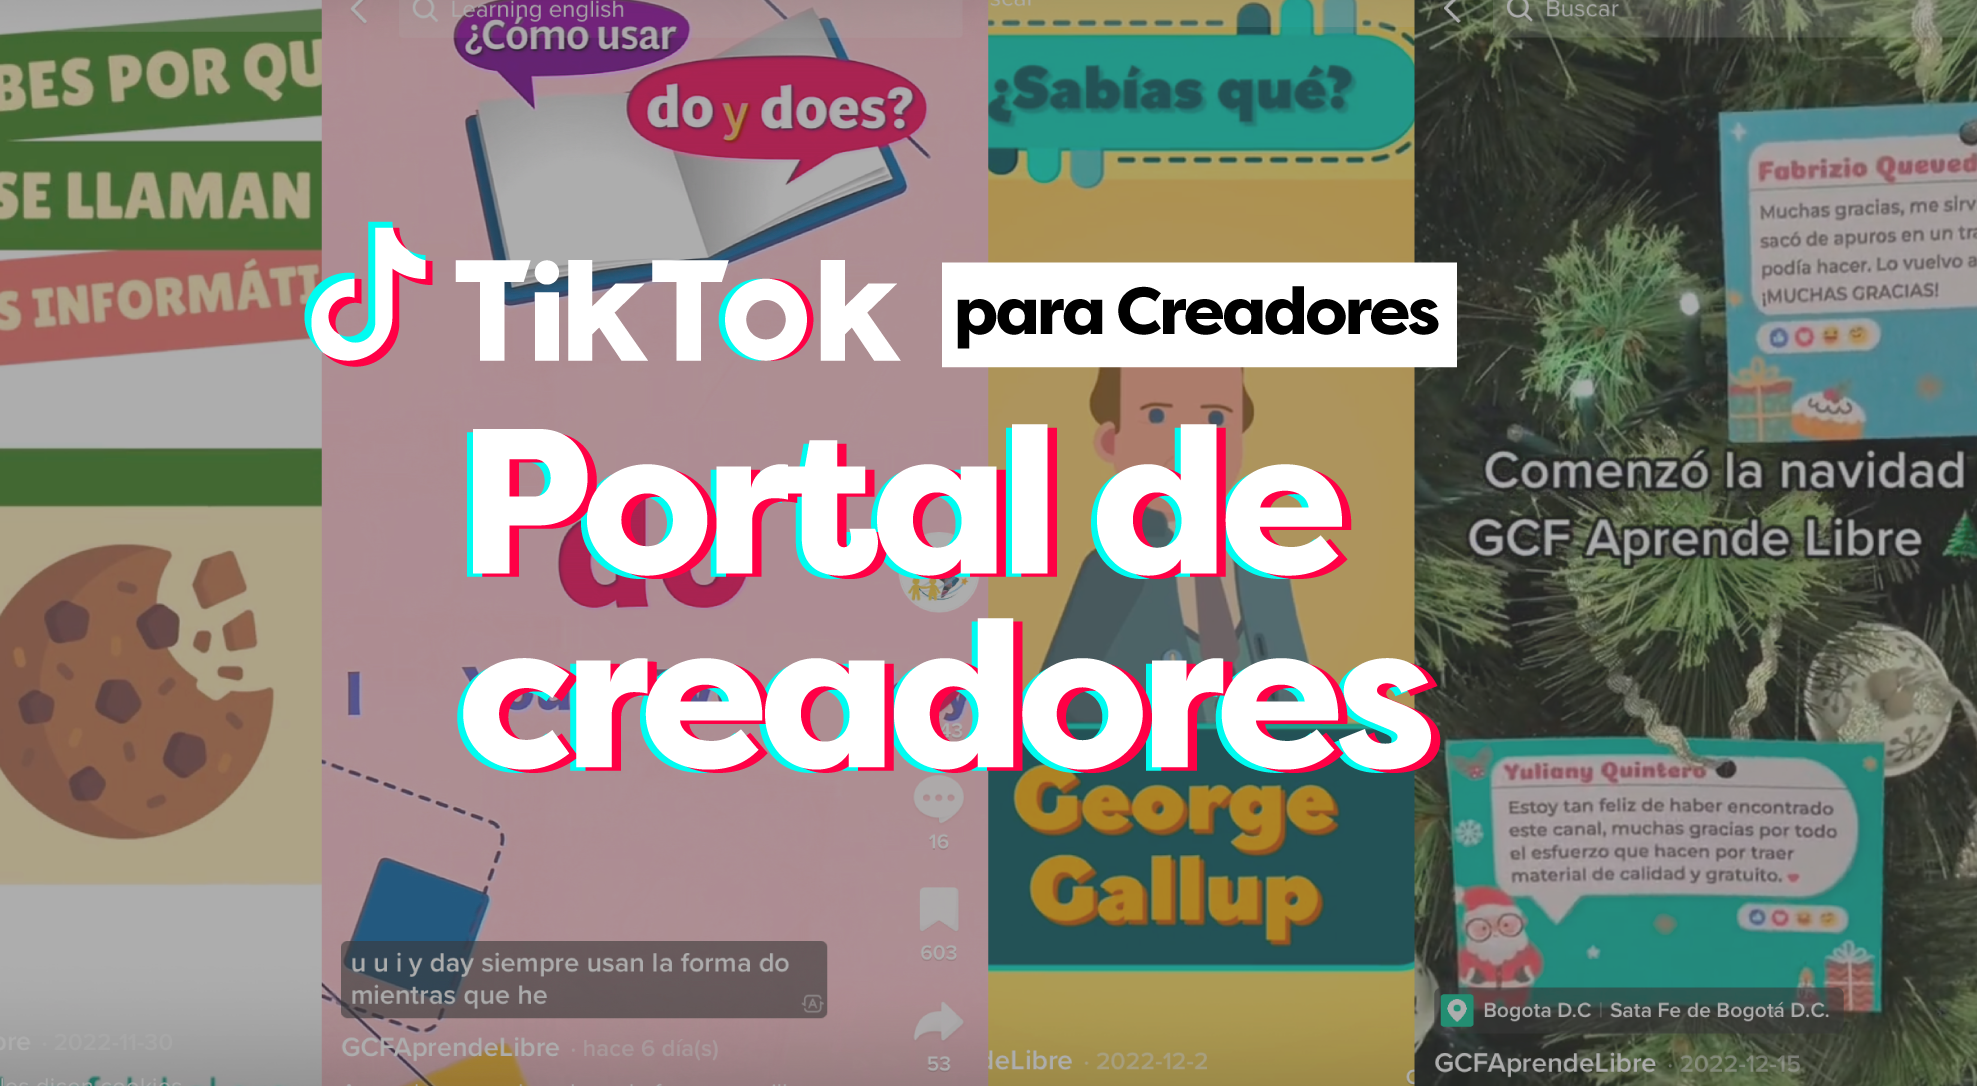 El Portal de creadores en TikTok es una plataforma en línea que ofrece recursos y herramientas para ayudar a los creadores de contenido en TikTok a mejorar y expandir su presencia en la plataforma. El portal se lanzó en 2019 y está disponible para todos los usuarios de TikTok.